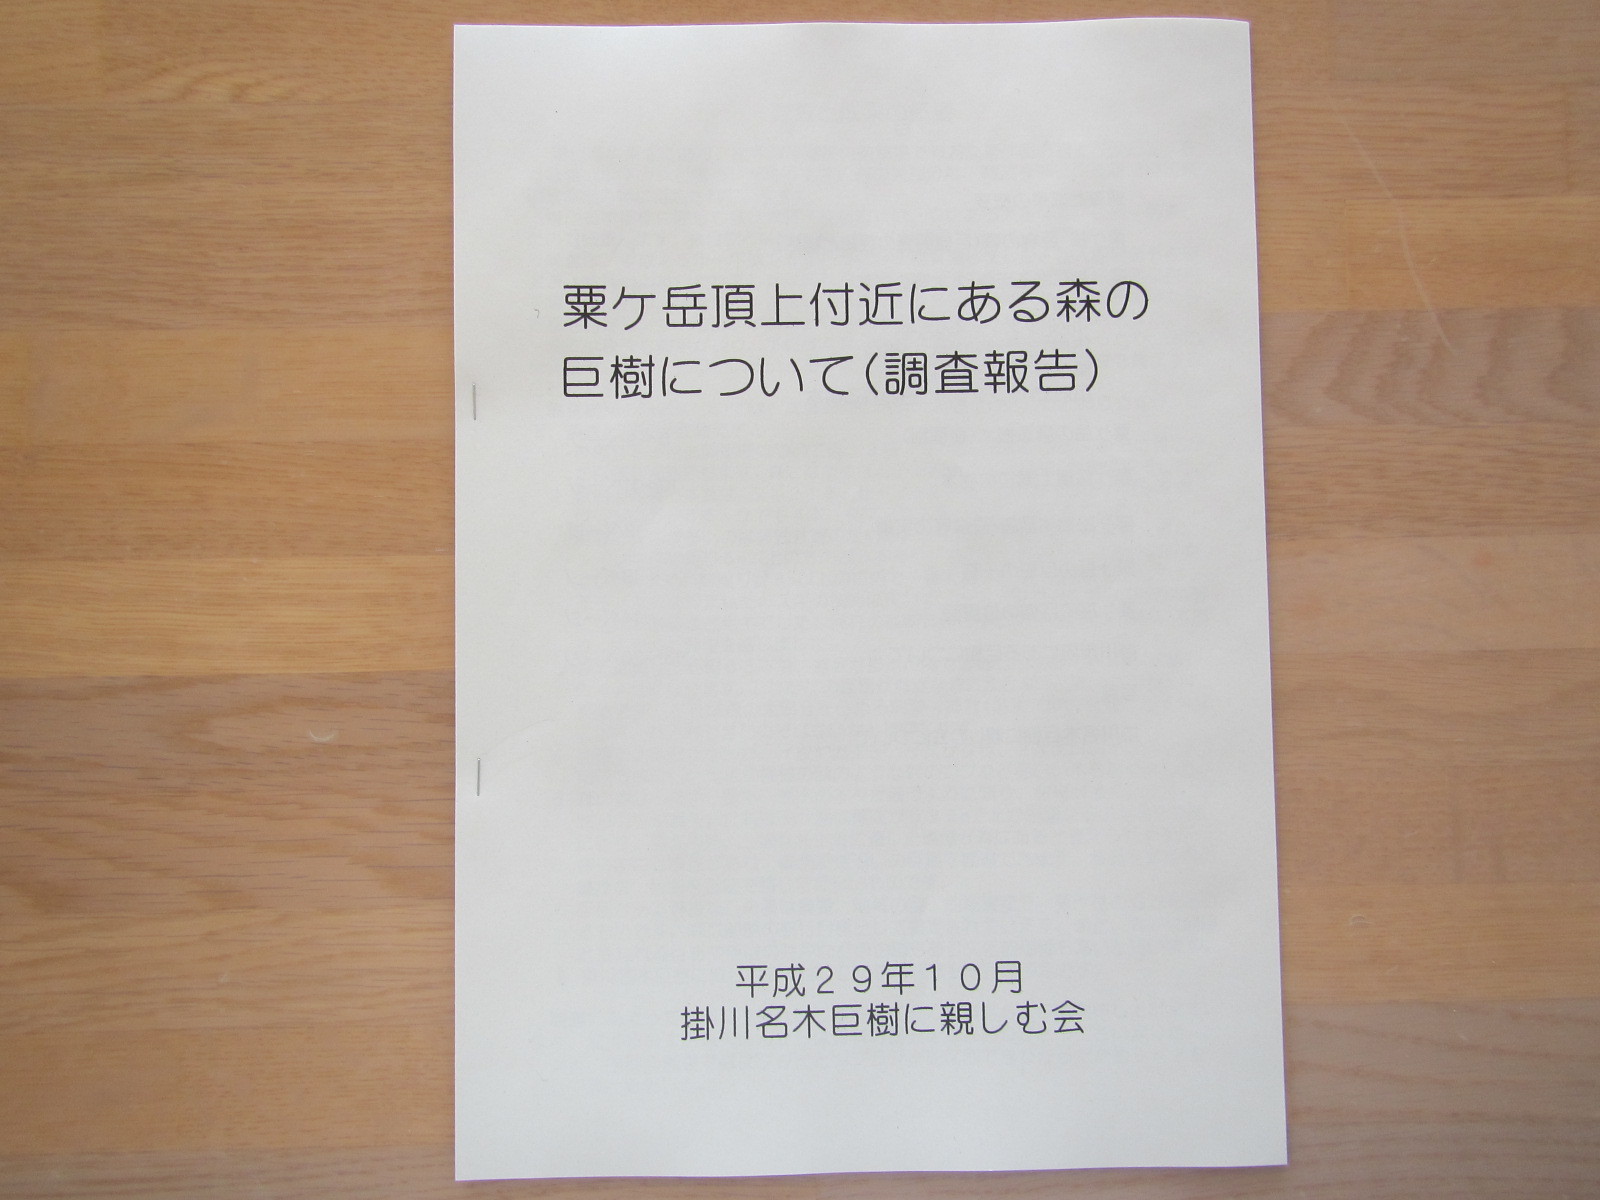 粟ヶ岳頂上付近にある森の巨樹についての報告書の表紙の写真